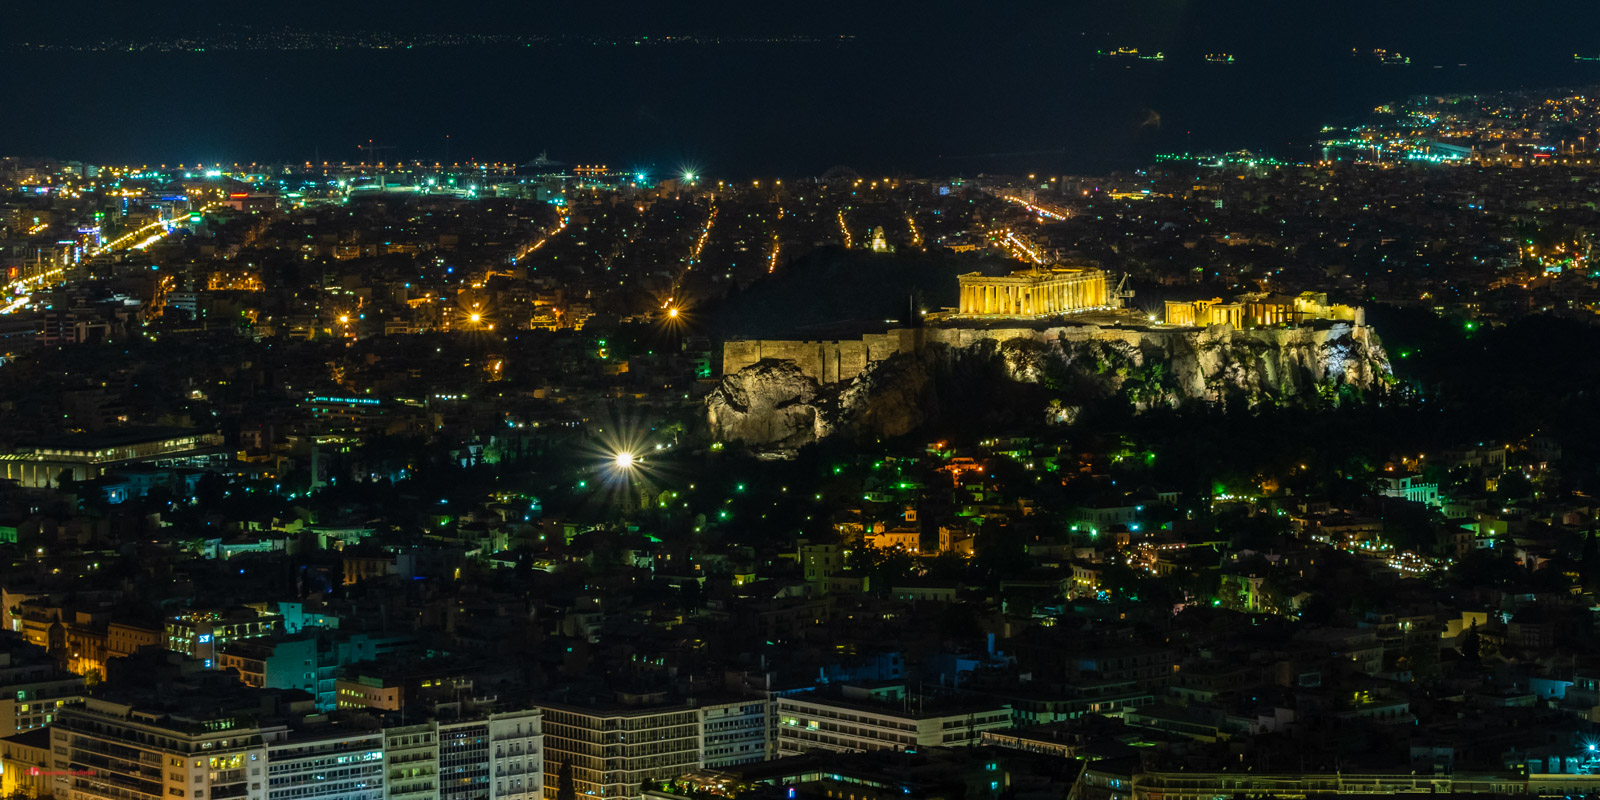 View of the Parthenon from the Likavitou mountain